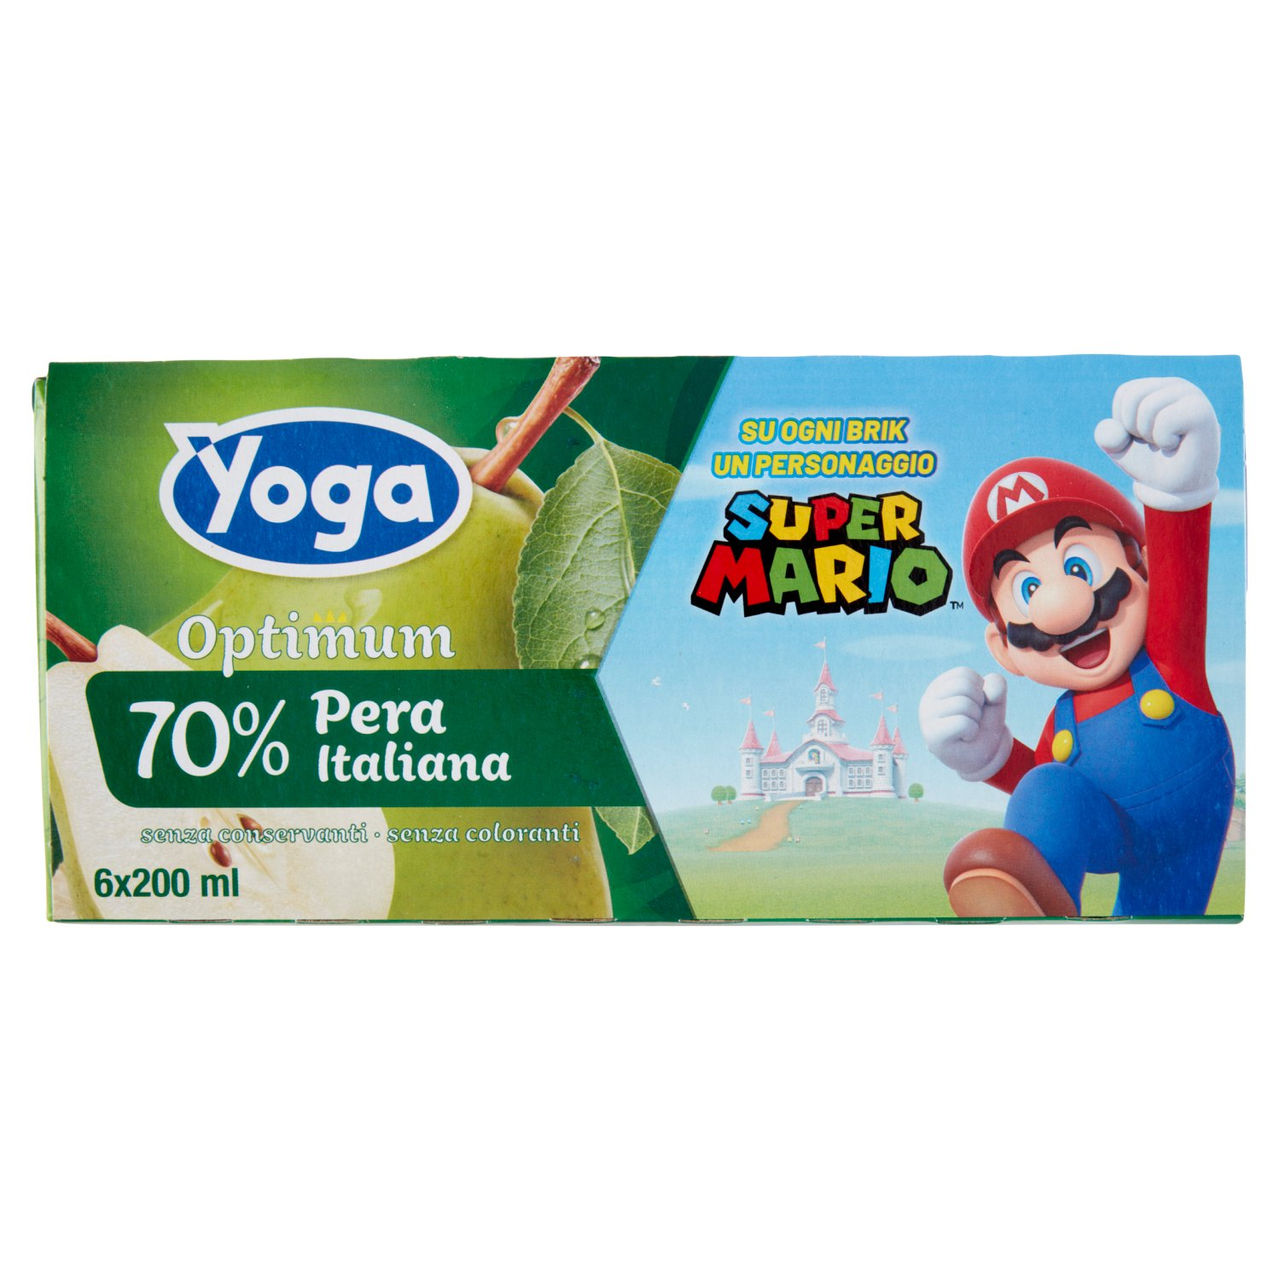 Yoga Optimum 70% Pera Italiana in vendita online